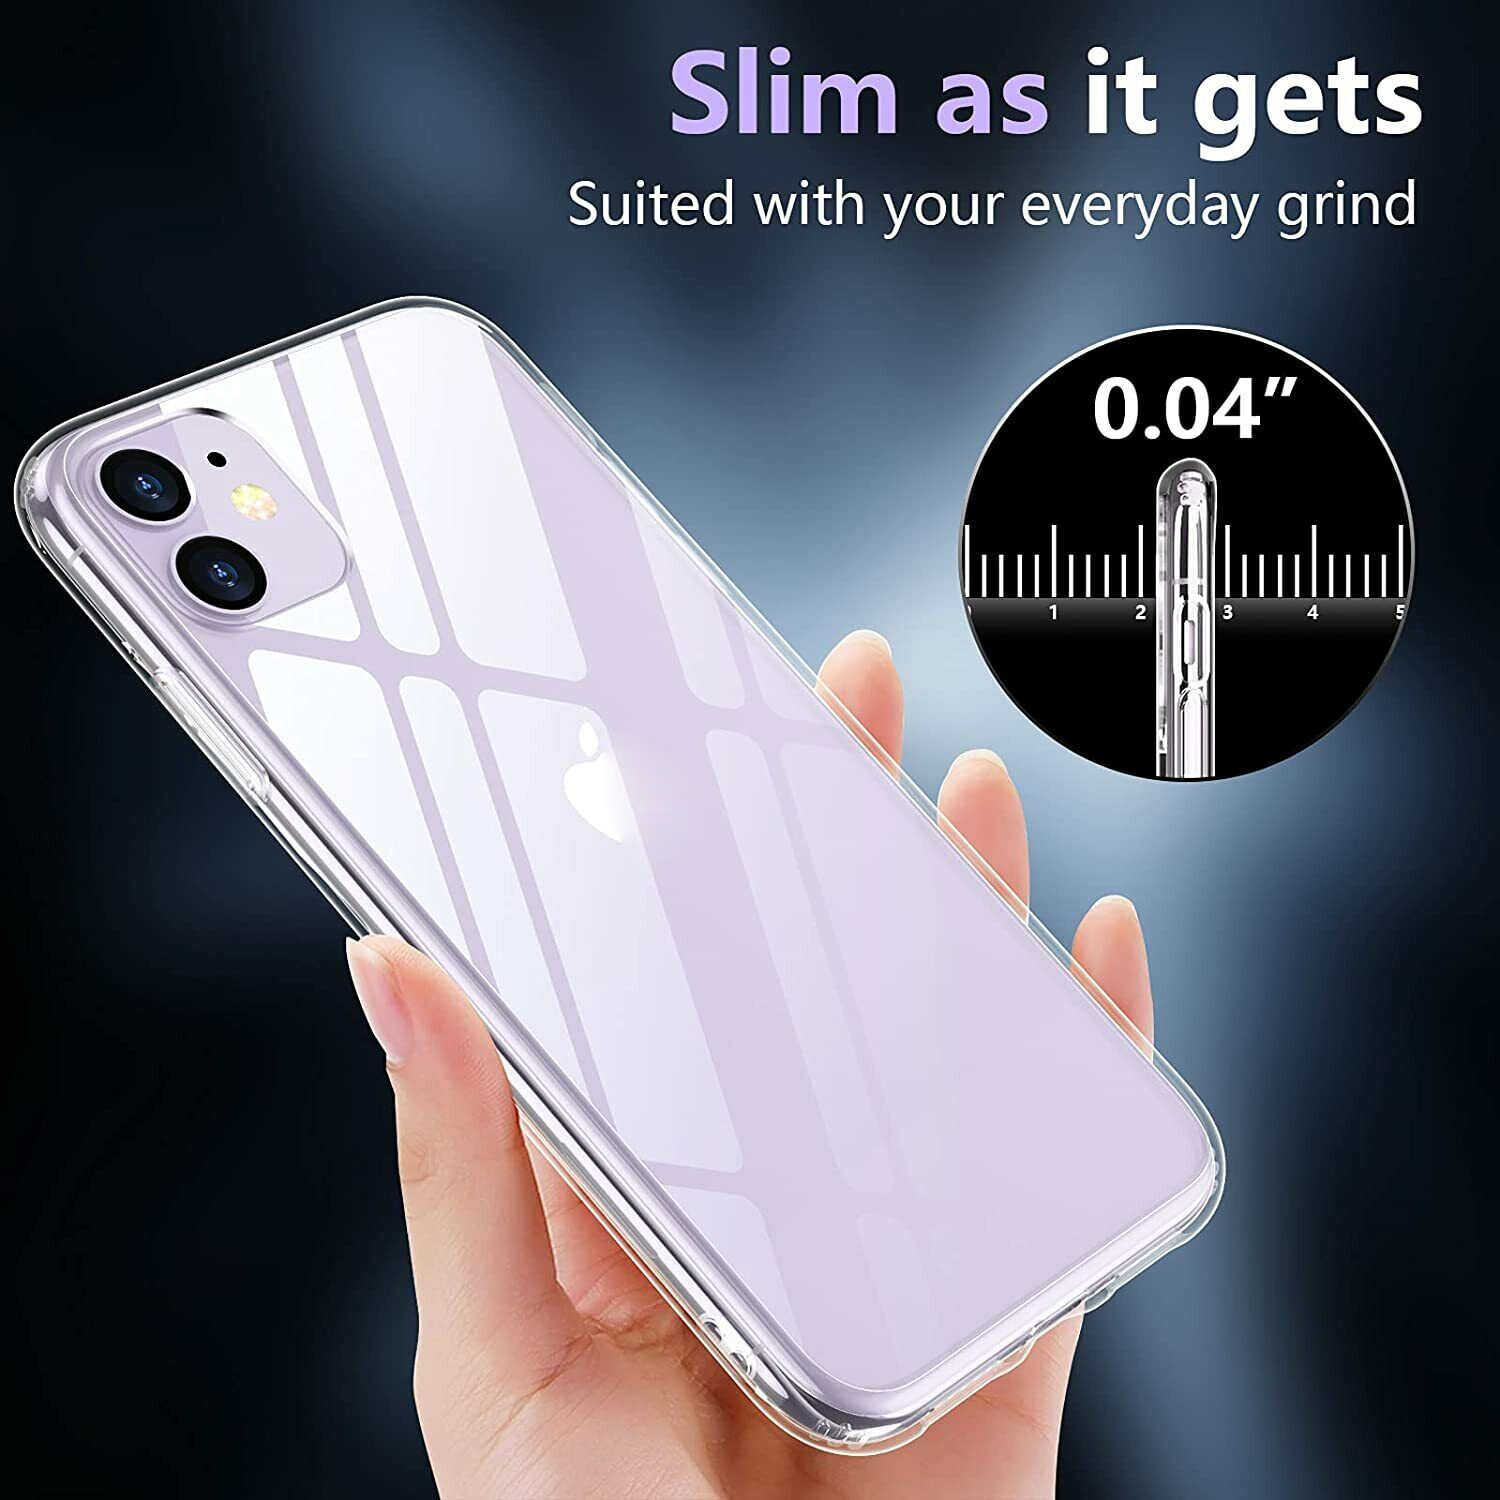 Ốp lưng chống sốc trong suốt cho iPhone 11 (6.1 inch) hiệu Memumi Glitter siêu mỏng 1.5mm độ trong tuyệt đối, chống trầy xước, chống ố vàng, tản nhiệt tốt - hàng nhập khẩu